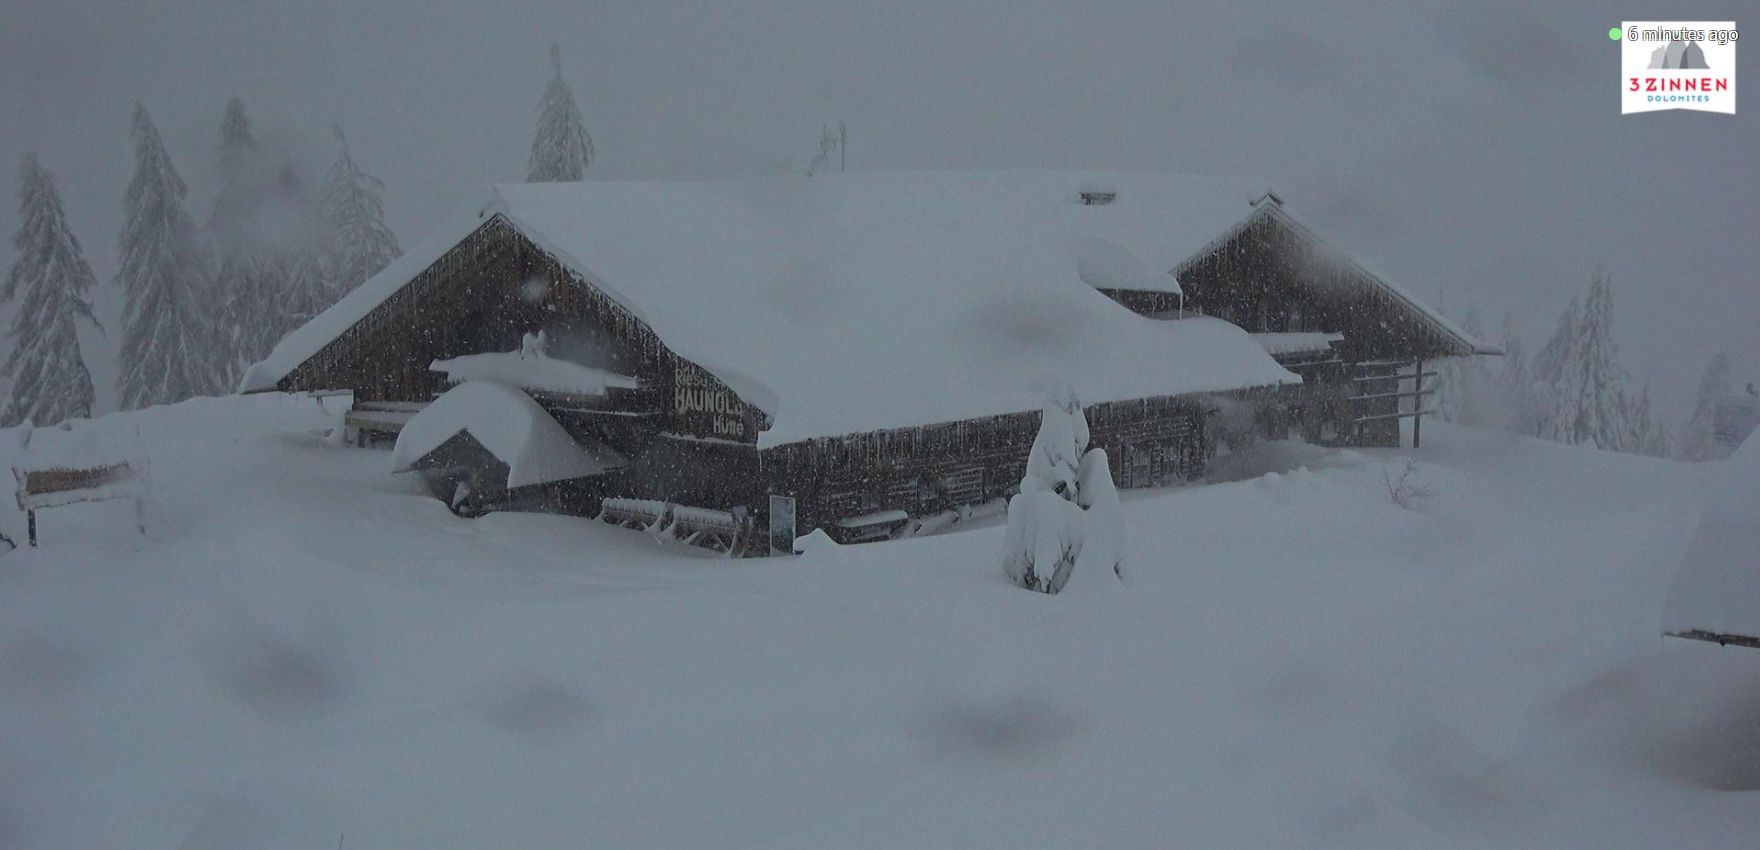 Ook vandaag nog dikke sneeuwval in de oostelijke Zuidalpen, zoals hier in Innichen